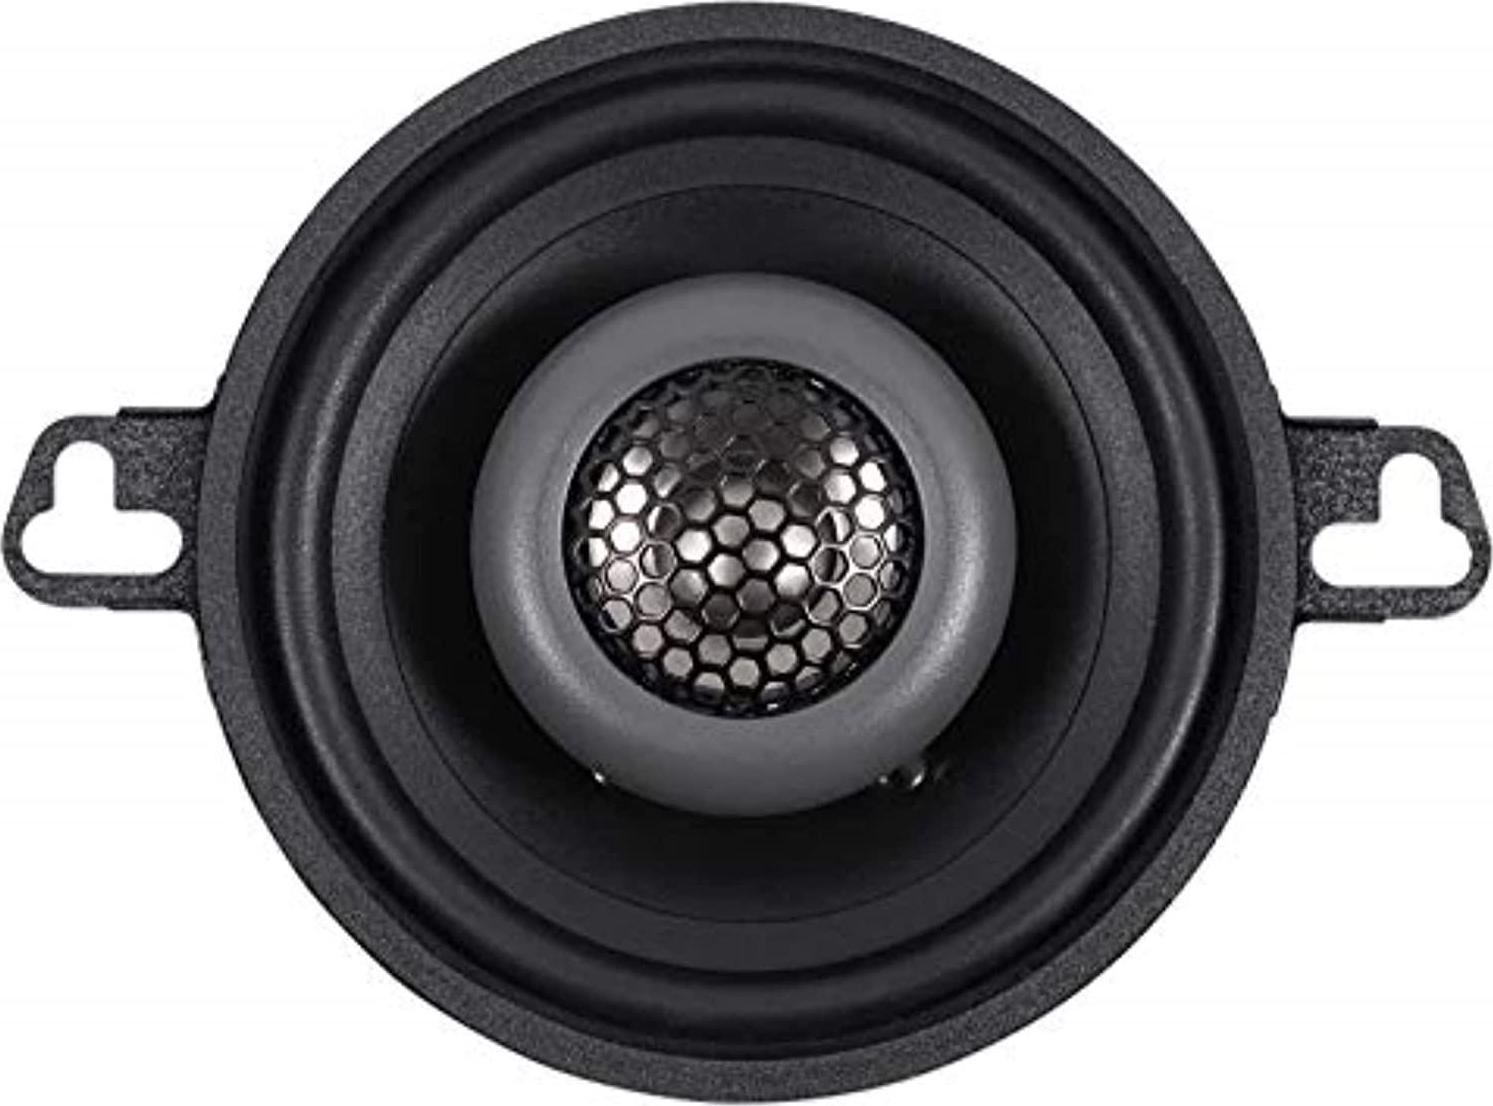 MB Quart, MB Quart Formula 3.5 inch 2-Way coaxial car Speakers